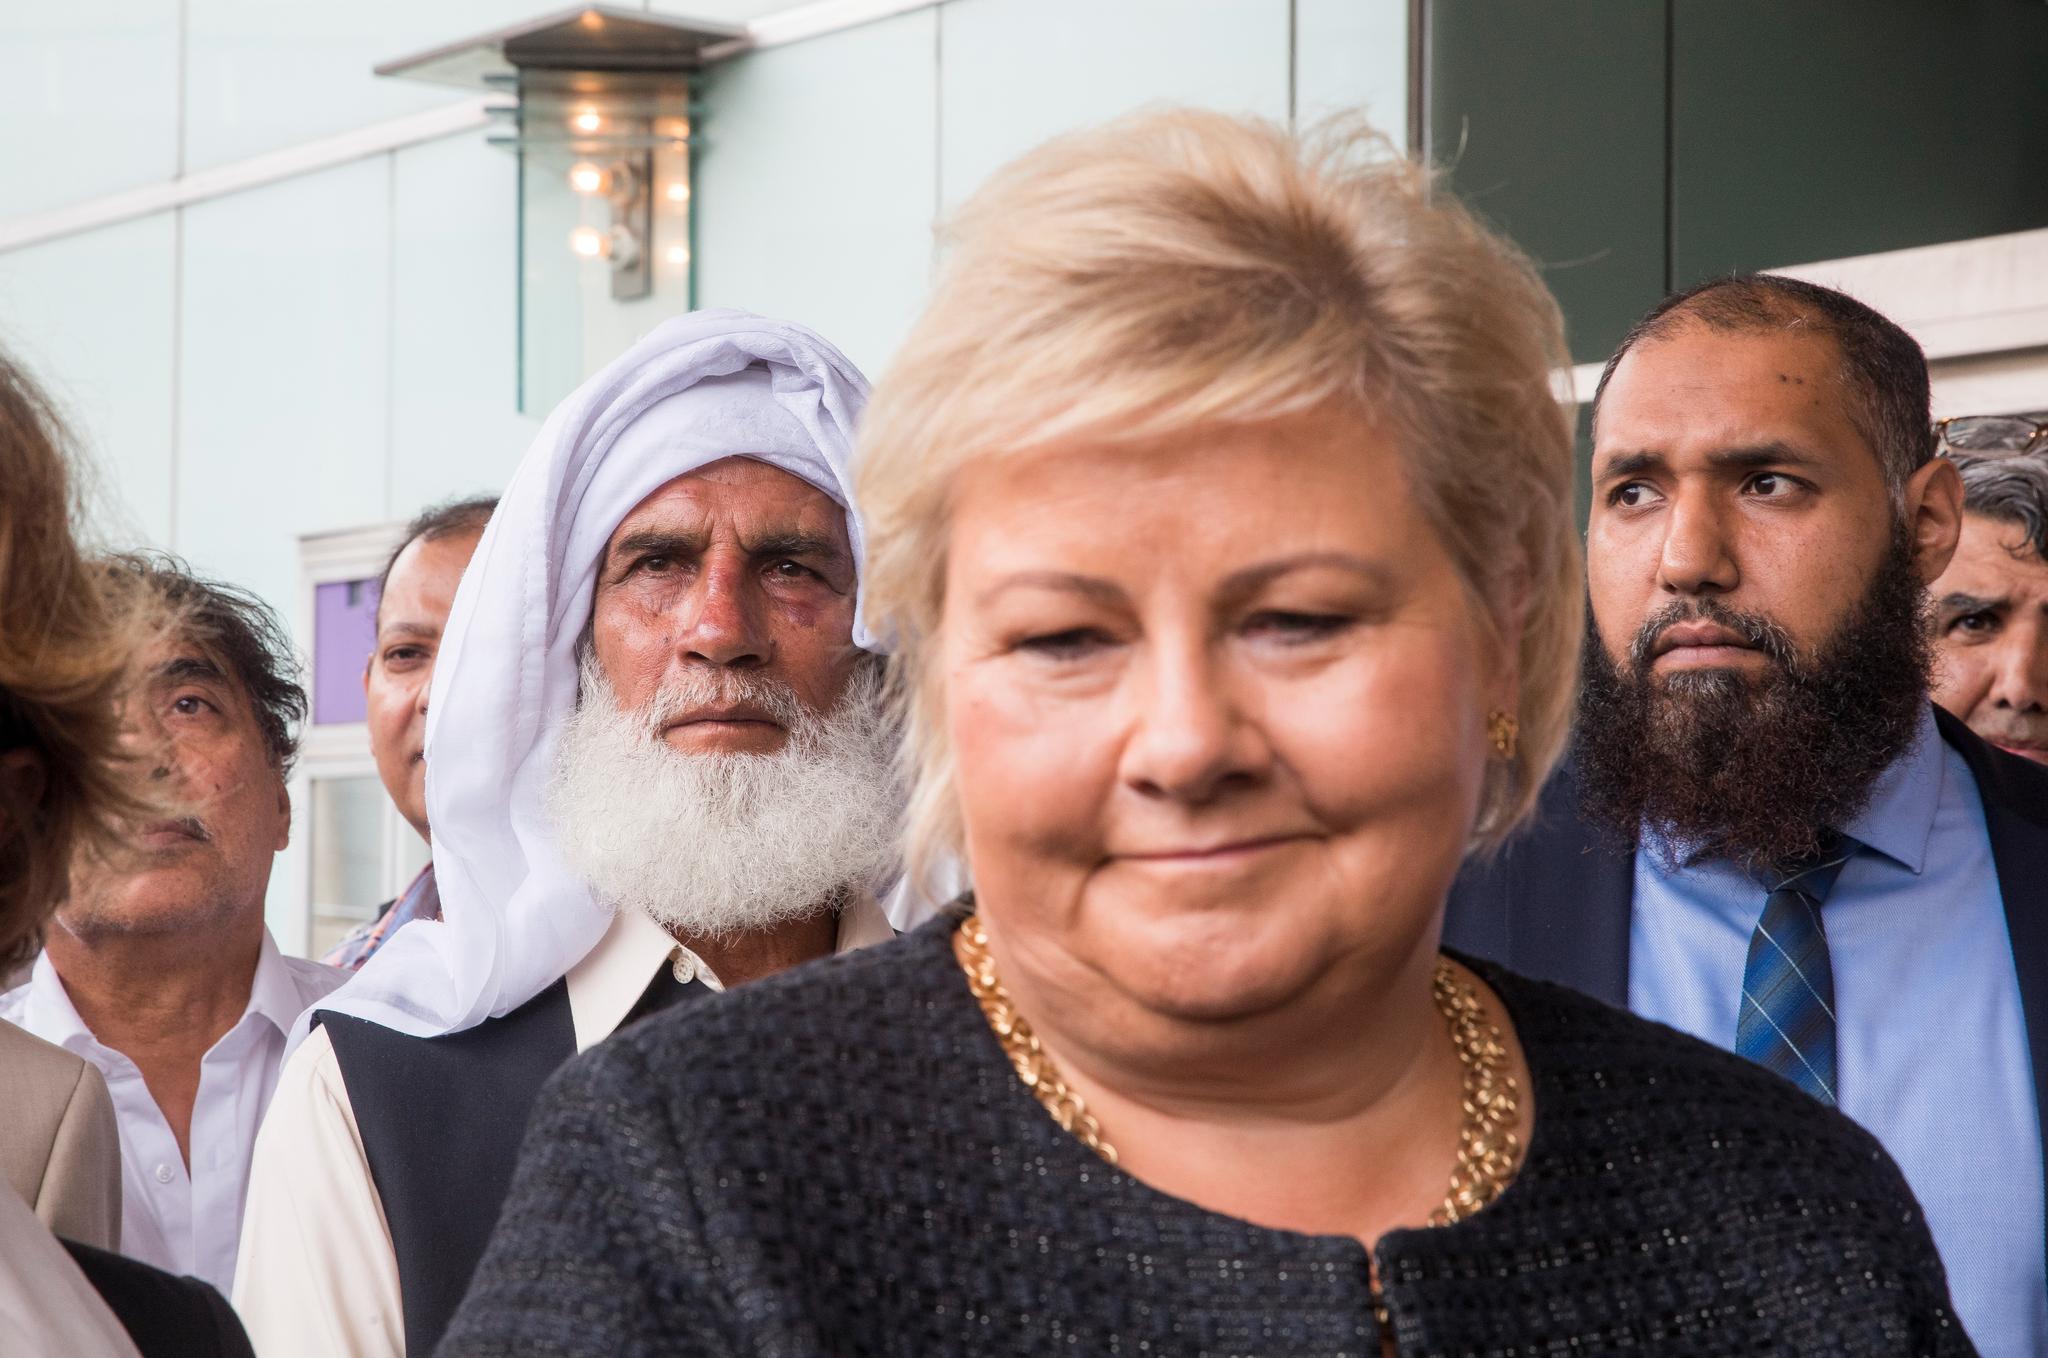 Statsminister Erna Solberg må stå frem som en tydelig leder i kampen mot islamhatet, skriver kronikkforfatteren. Her besøker hun menigheten Al-Noor Islamic Centre etter terrorforsøket lørdag. Bak t.v. står Mohamed Rafiq som stoppet gjerningsmannen. 